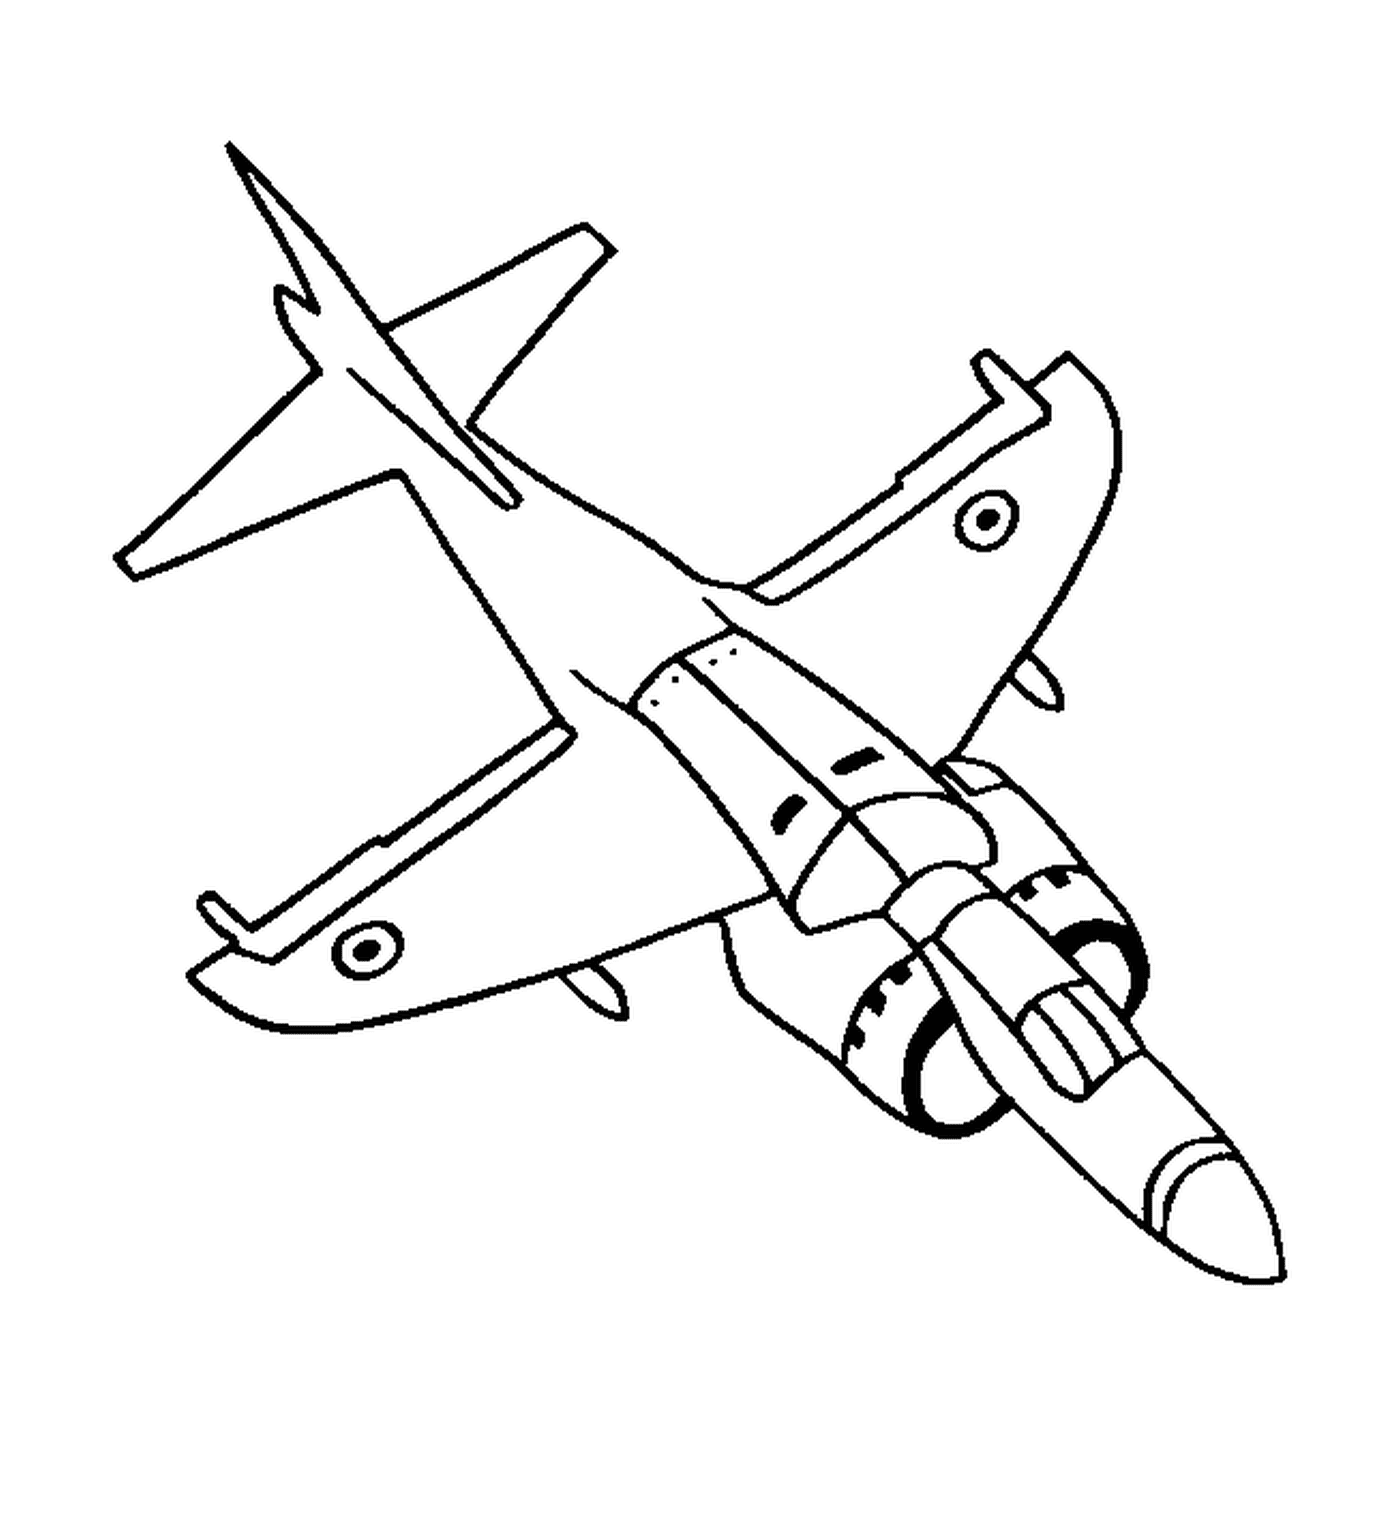  Um avião de combate 